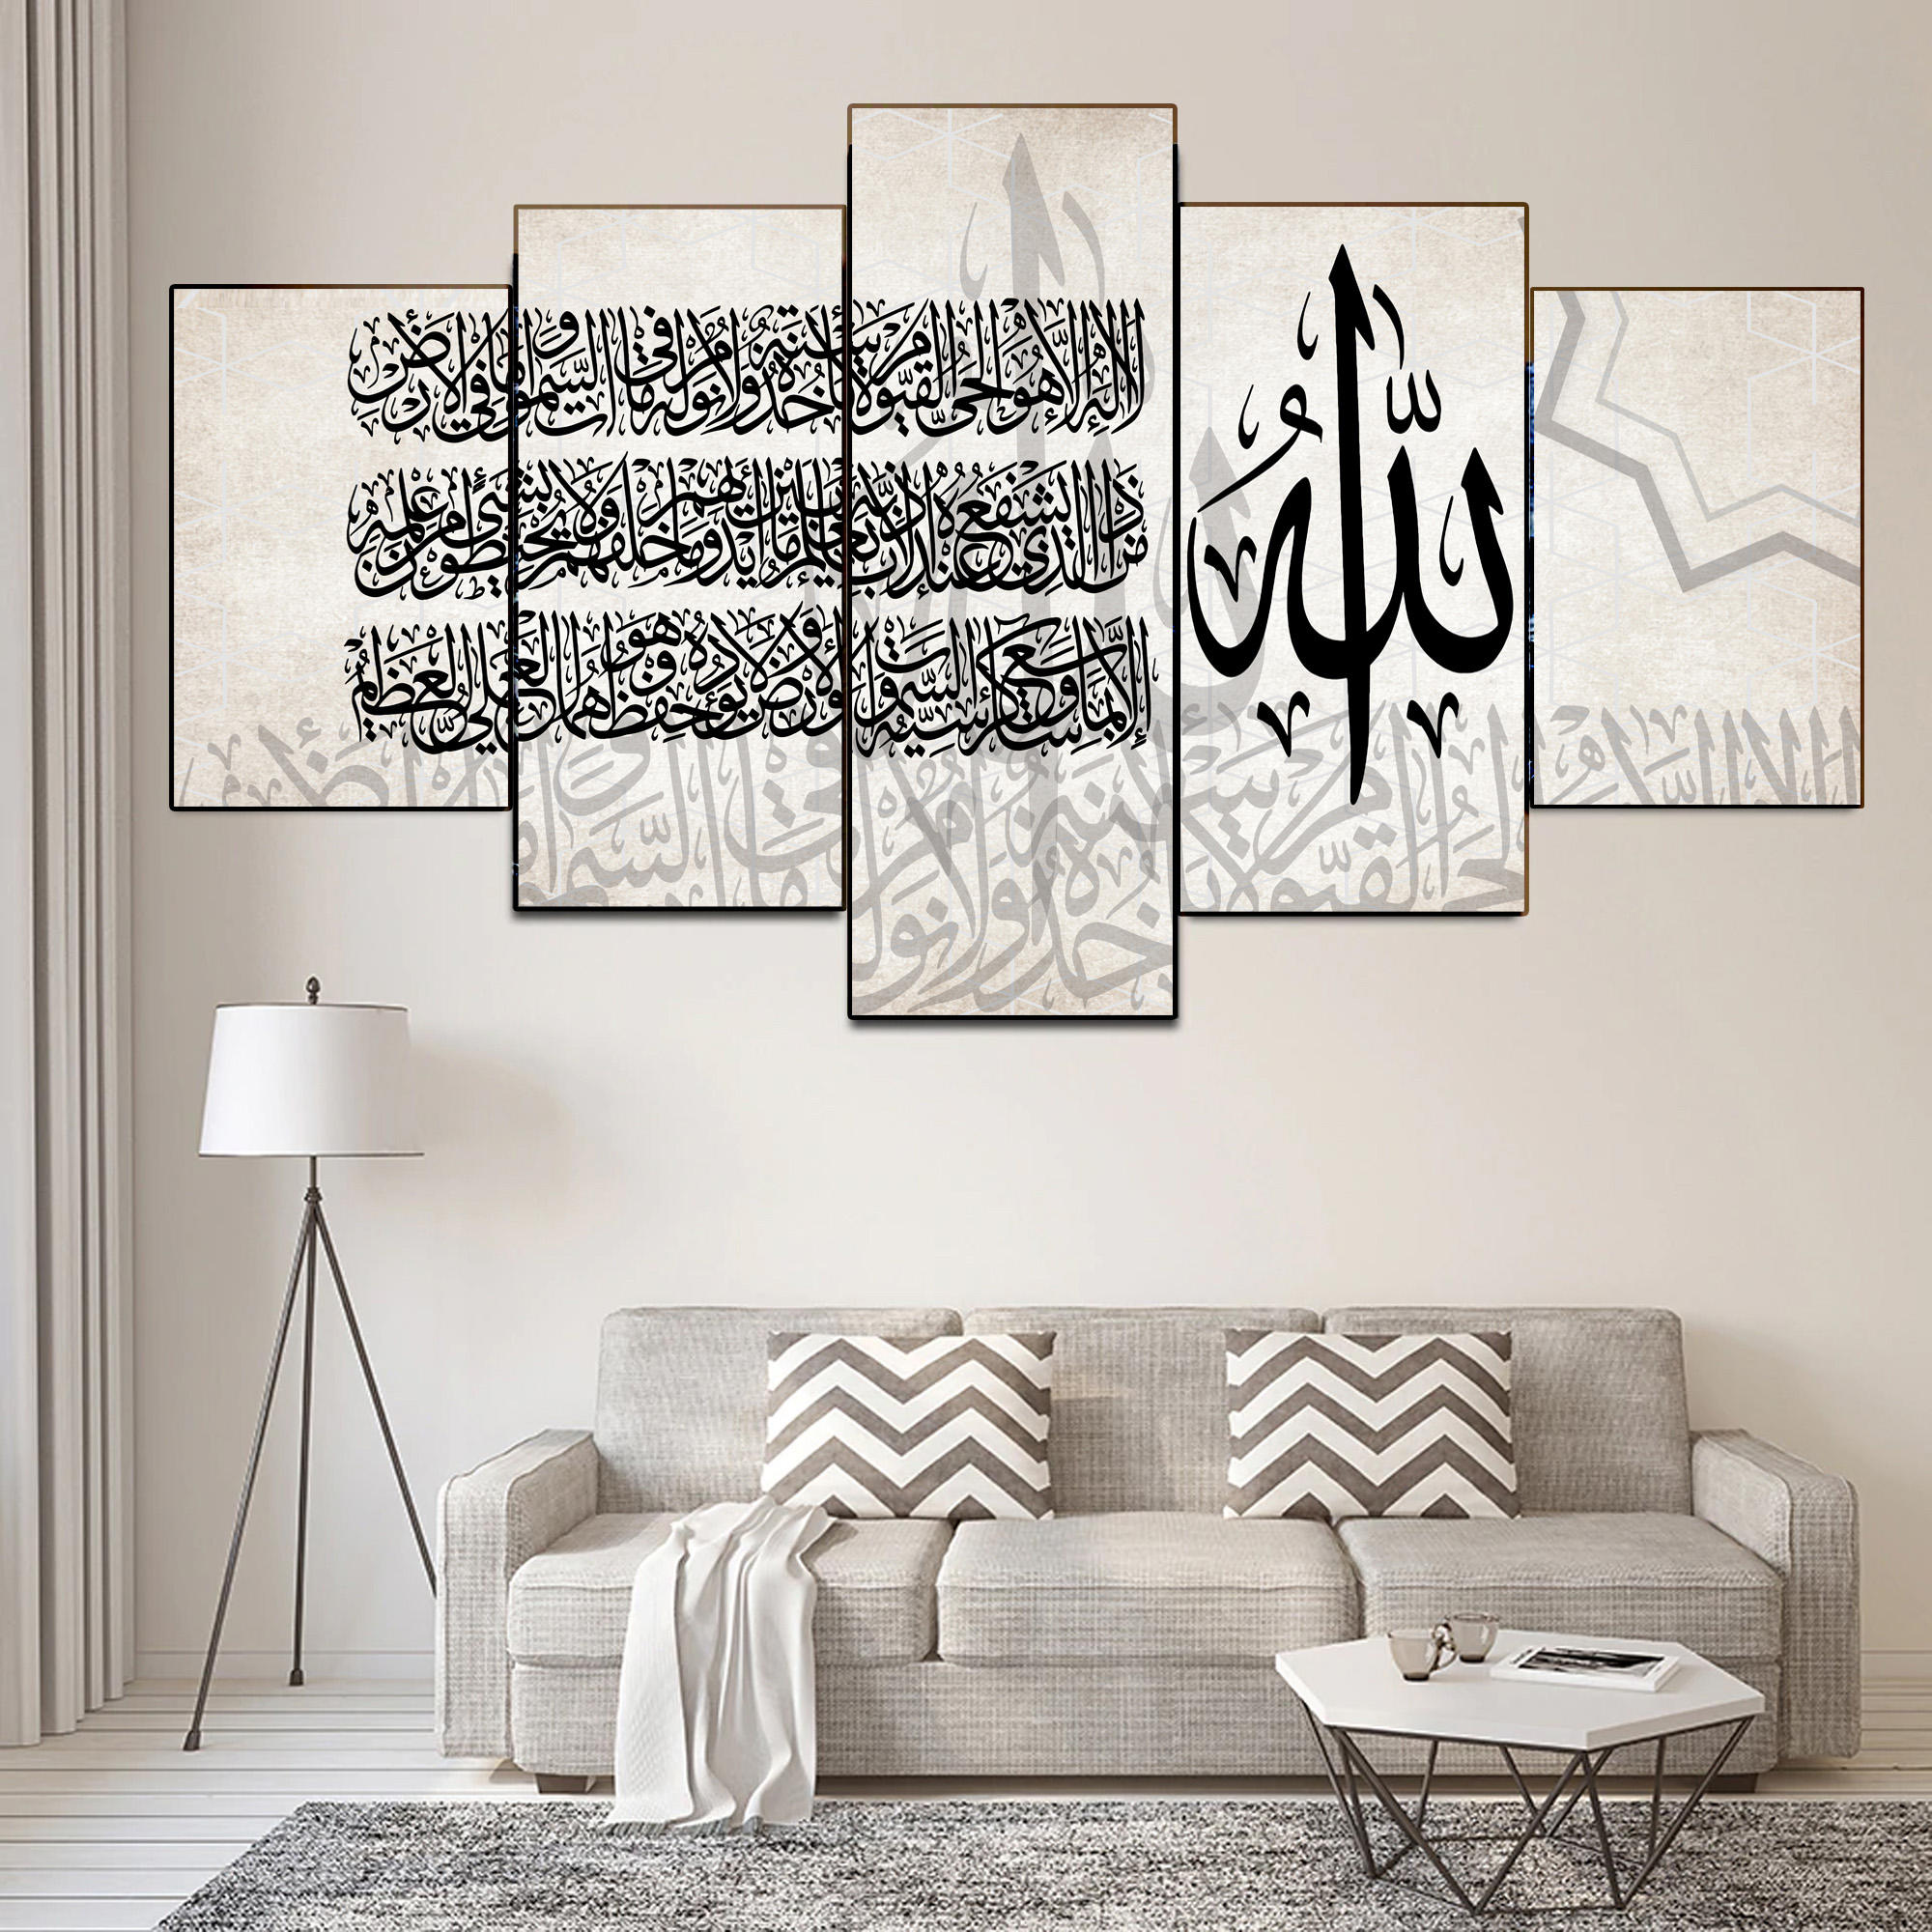 لوحات فنية اسلامية مطبوعة على قماش الكانفس ( اية الكرسي )